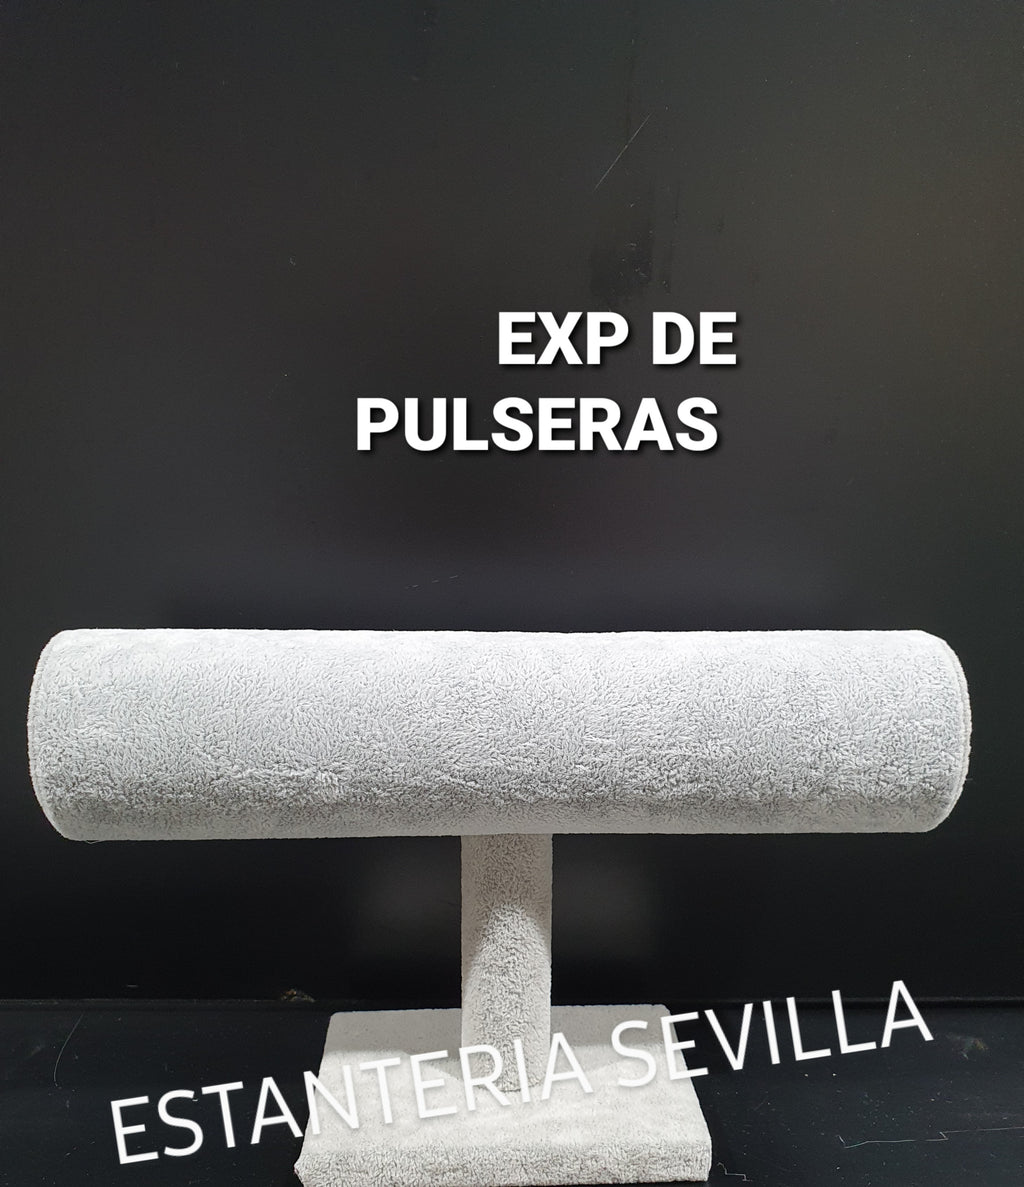 EXPOSITOR DE PULSERAS Ref 91004-2